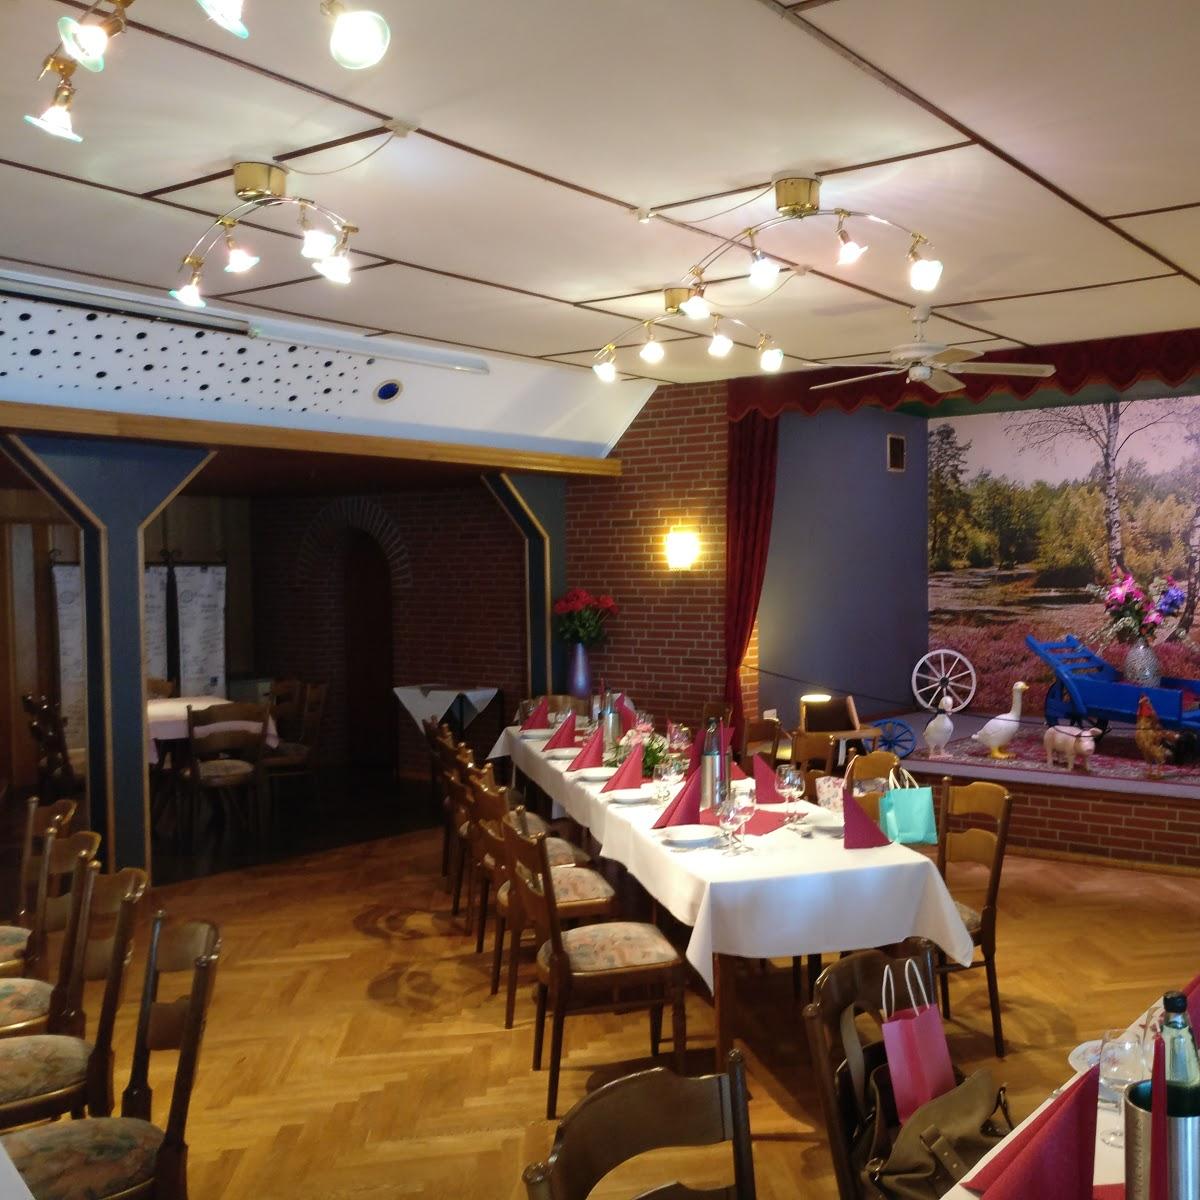 Restaurant "Hans Harald Leverenz" in Neuenkirchen